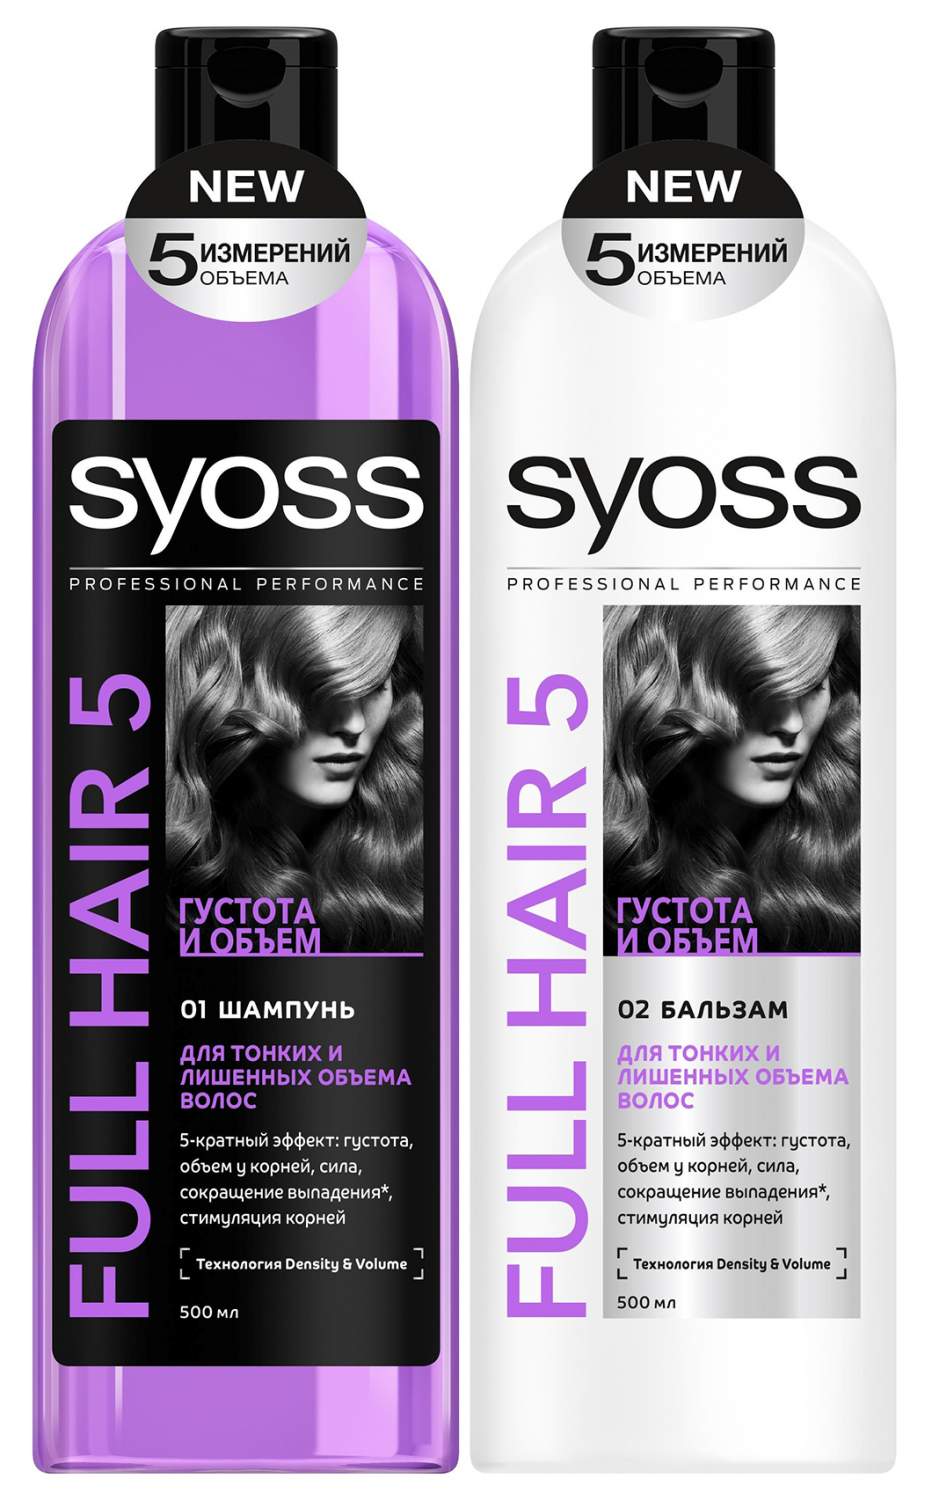 Муки выбора: шампуни для всех типов волос от syoss — на что обратить внимание и как правильно пользоваться?